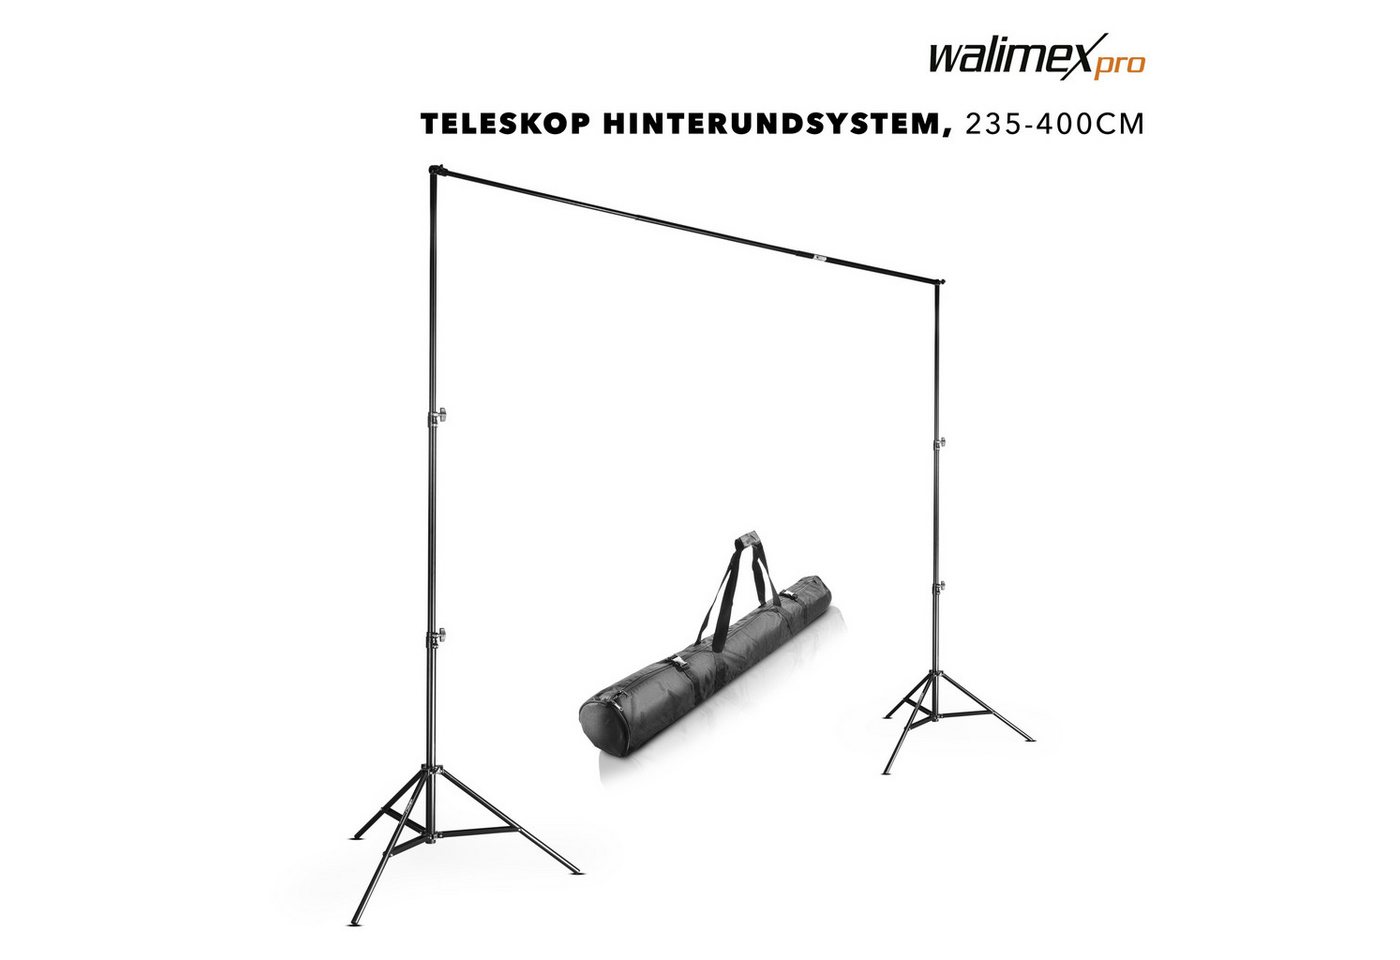 Walimex Pro Fotohintergrund Teleskop Hintergrundsystem XL 225-400cm von Walimex Pro